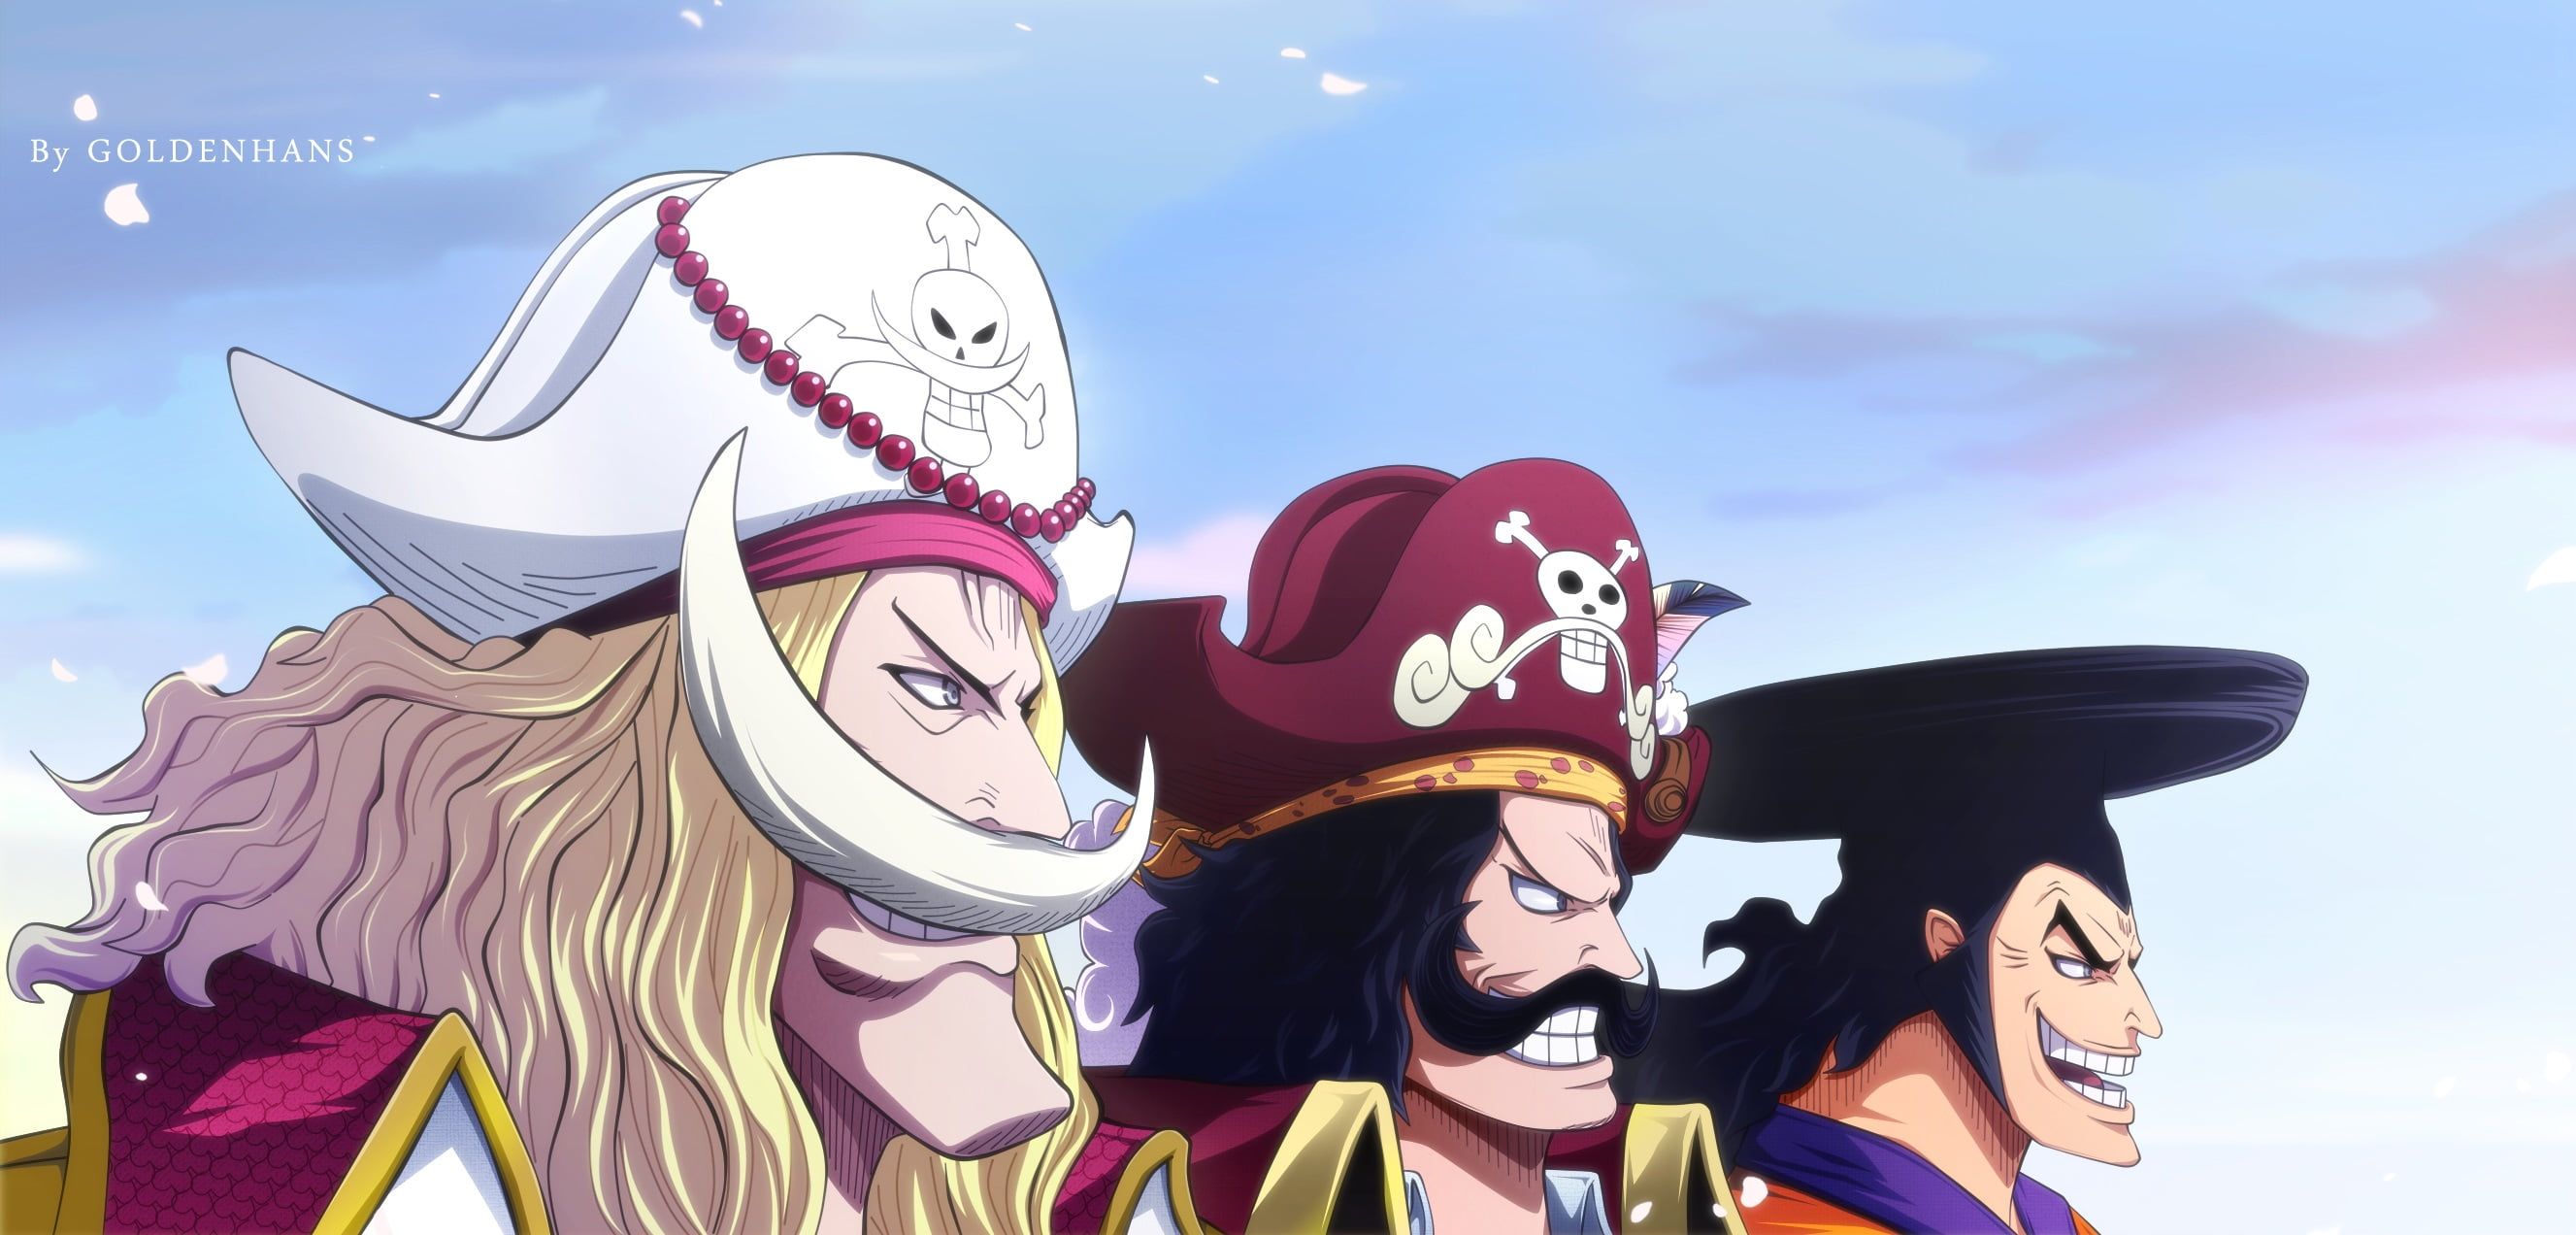 Băng Râu Trắng: Băng Râu Trắng là một trong những băng hải tặc có sức mạnh đáng sợ nhất trong One Piece. Những trận chiến của họ vô cùng ly kỳ và đầy kịch tính. Hãy xem hình ảnh liên quan để khám phá thêm về Băng Râu Trắng và các thành viên của băng hải tặc này.